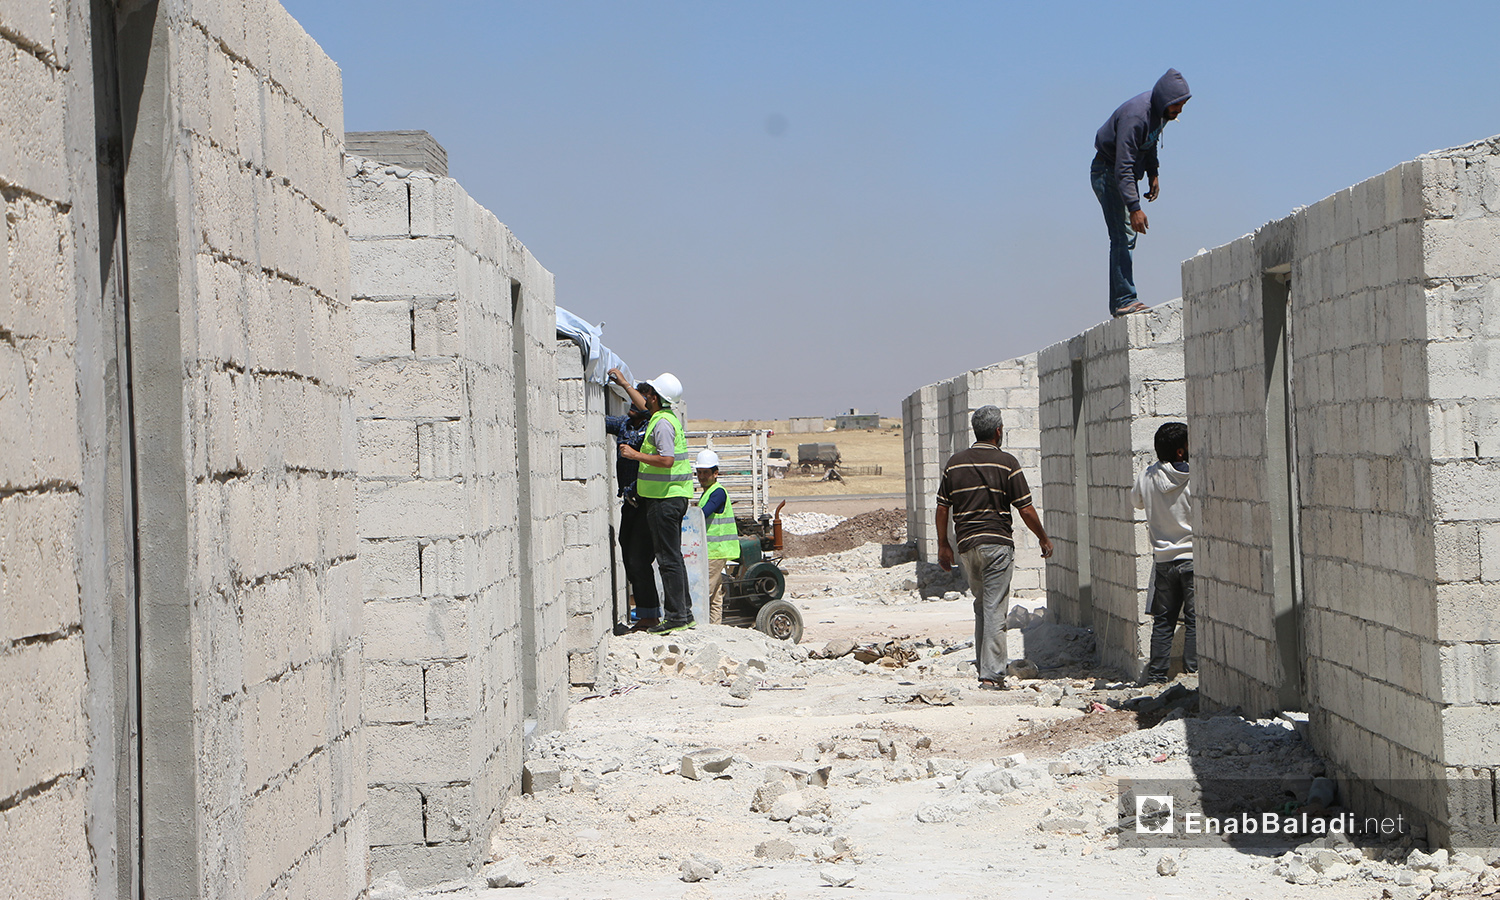 عمال بناء ضمن مشروع الكتل السكنية عوضًا عن الخيام في قرية بحورته بريف حلب الشمالي - 26 حزيران 2020 (عنب بلدي/عبد السلام مجعان)
